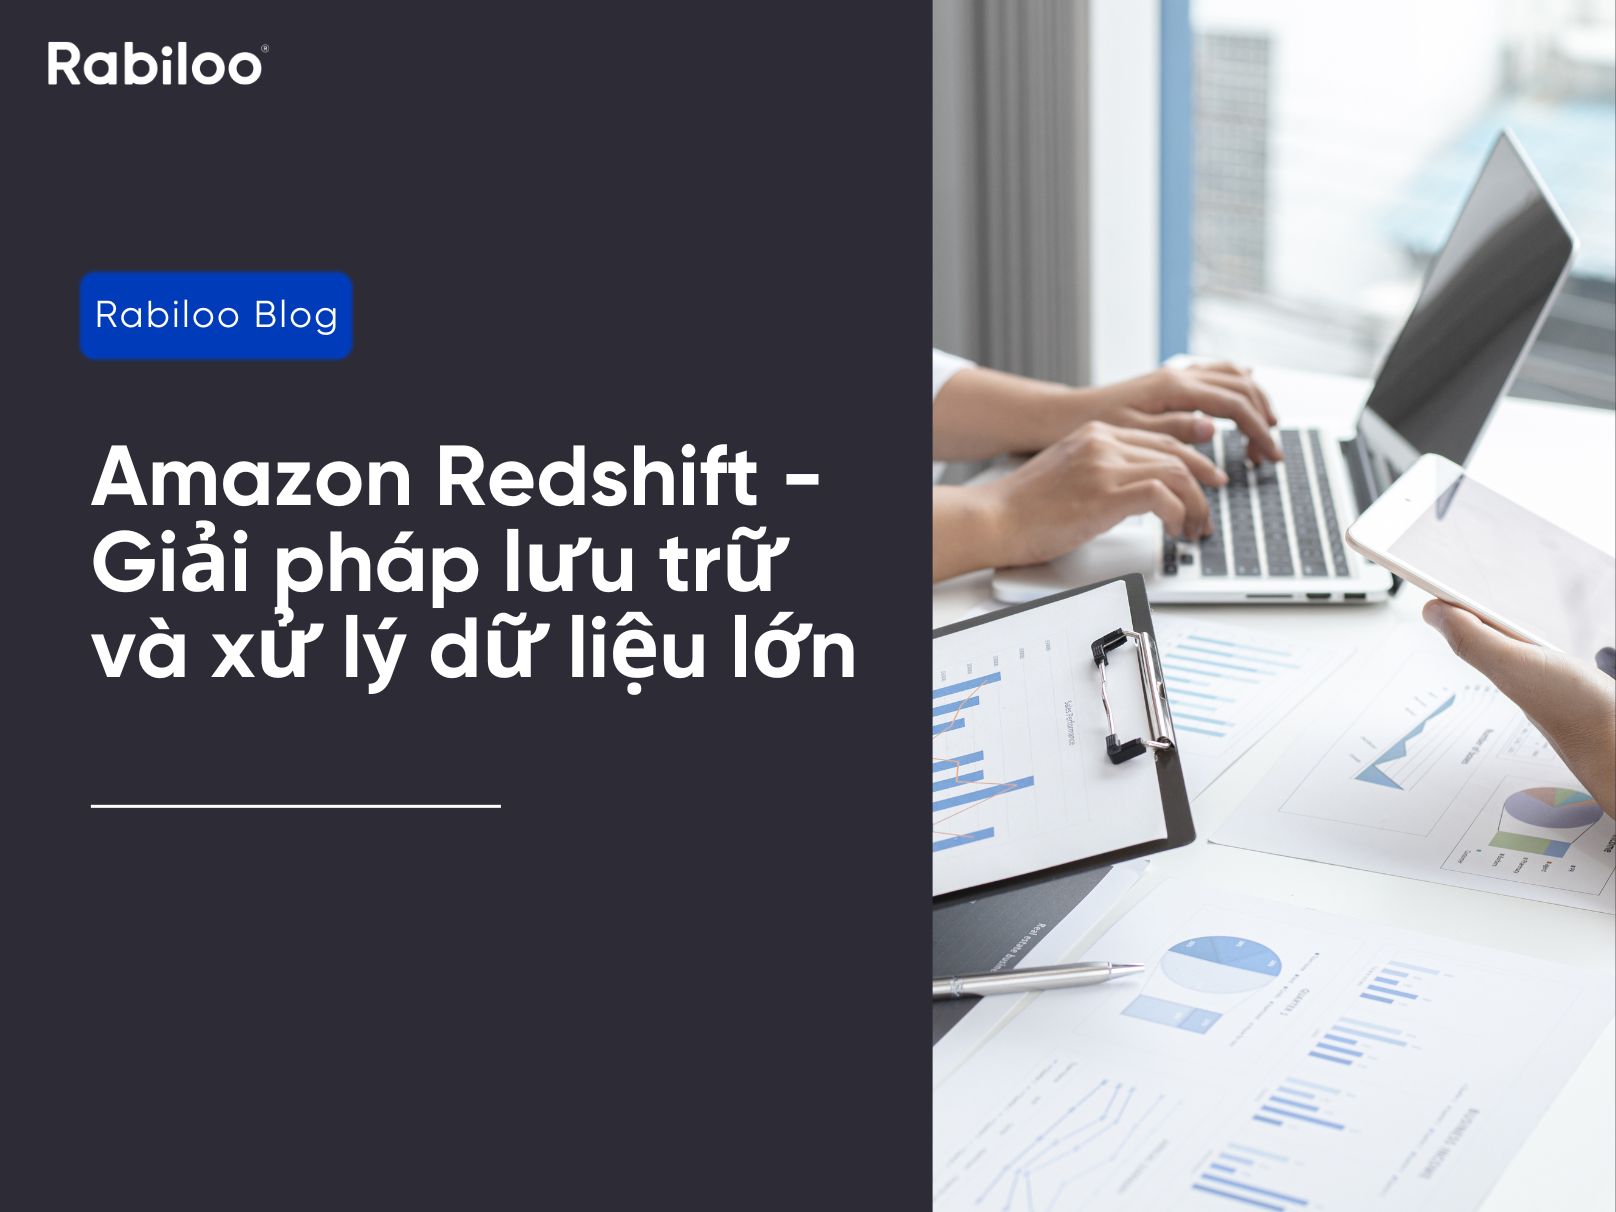 Amazon Redshift - Giải pháp lưu trữ và xử lý dữ liệu lớn